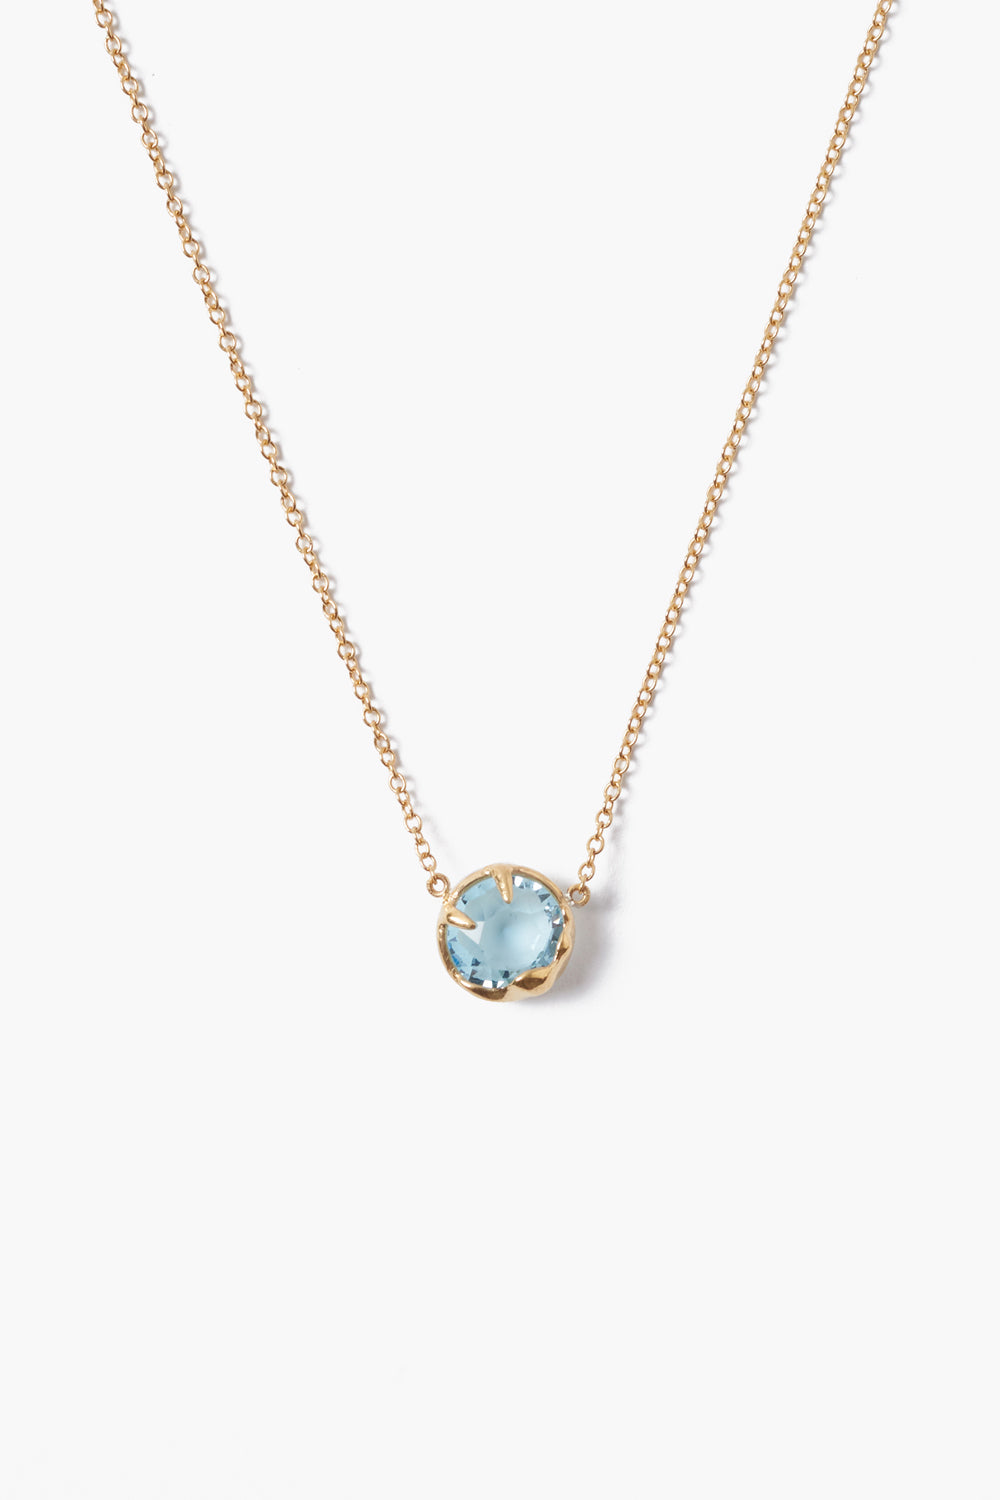 March Birthstone Necklace Aquamarine Crystal – Chan Luu